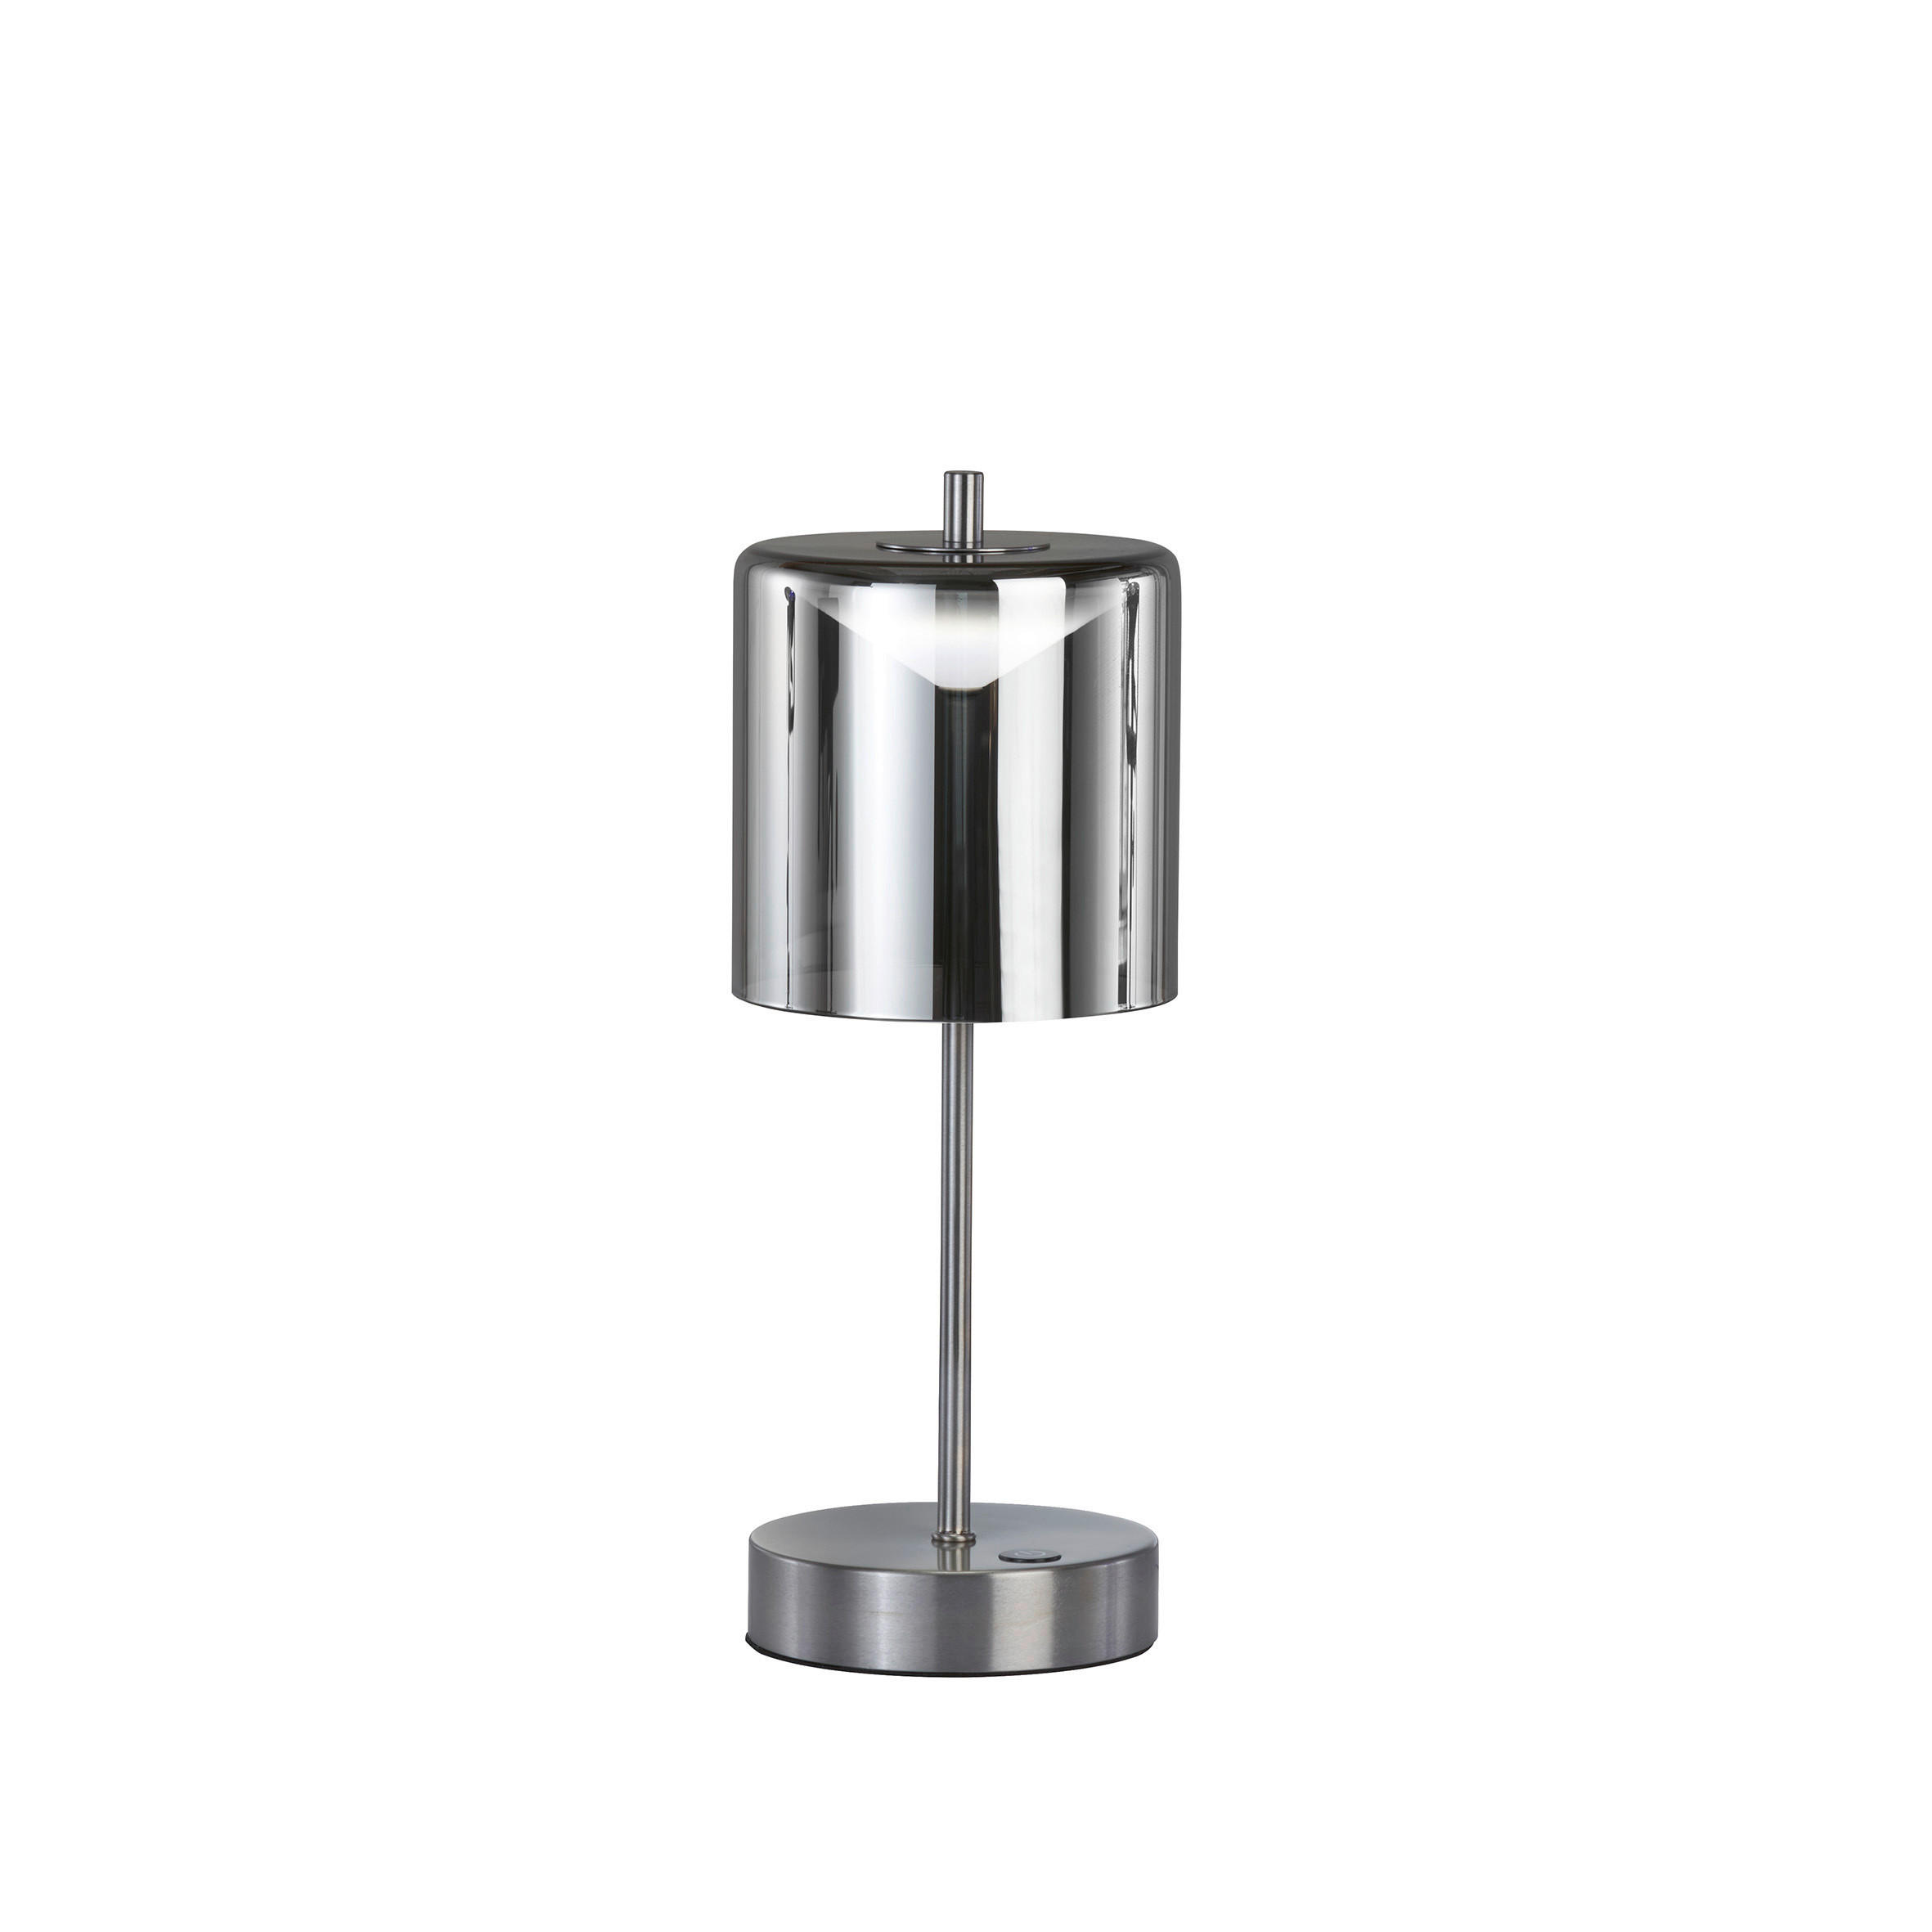 AKKU-TISCHLEUCHTE Riva 13/34,50 cm   - Schwarz/Nickelfarben, Design, Glas/Metall (13/34,50cm)